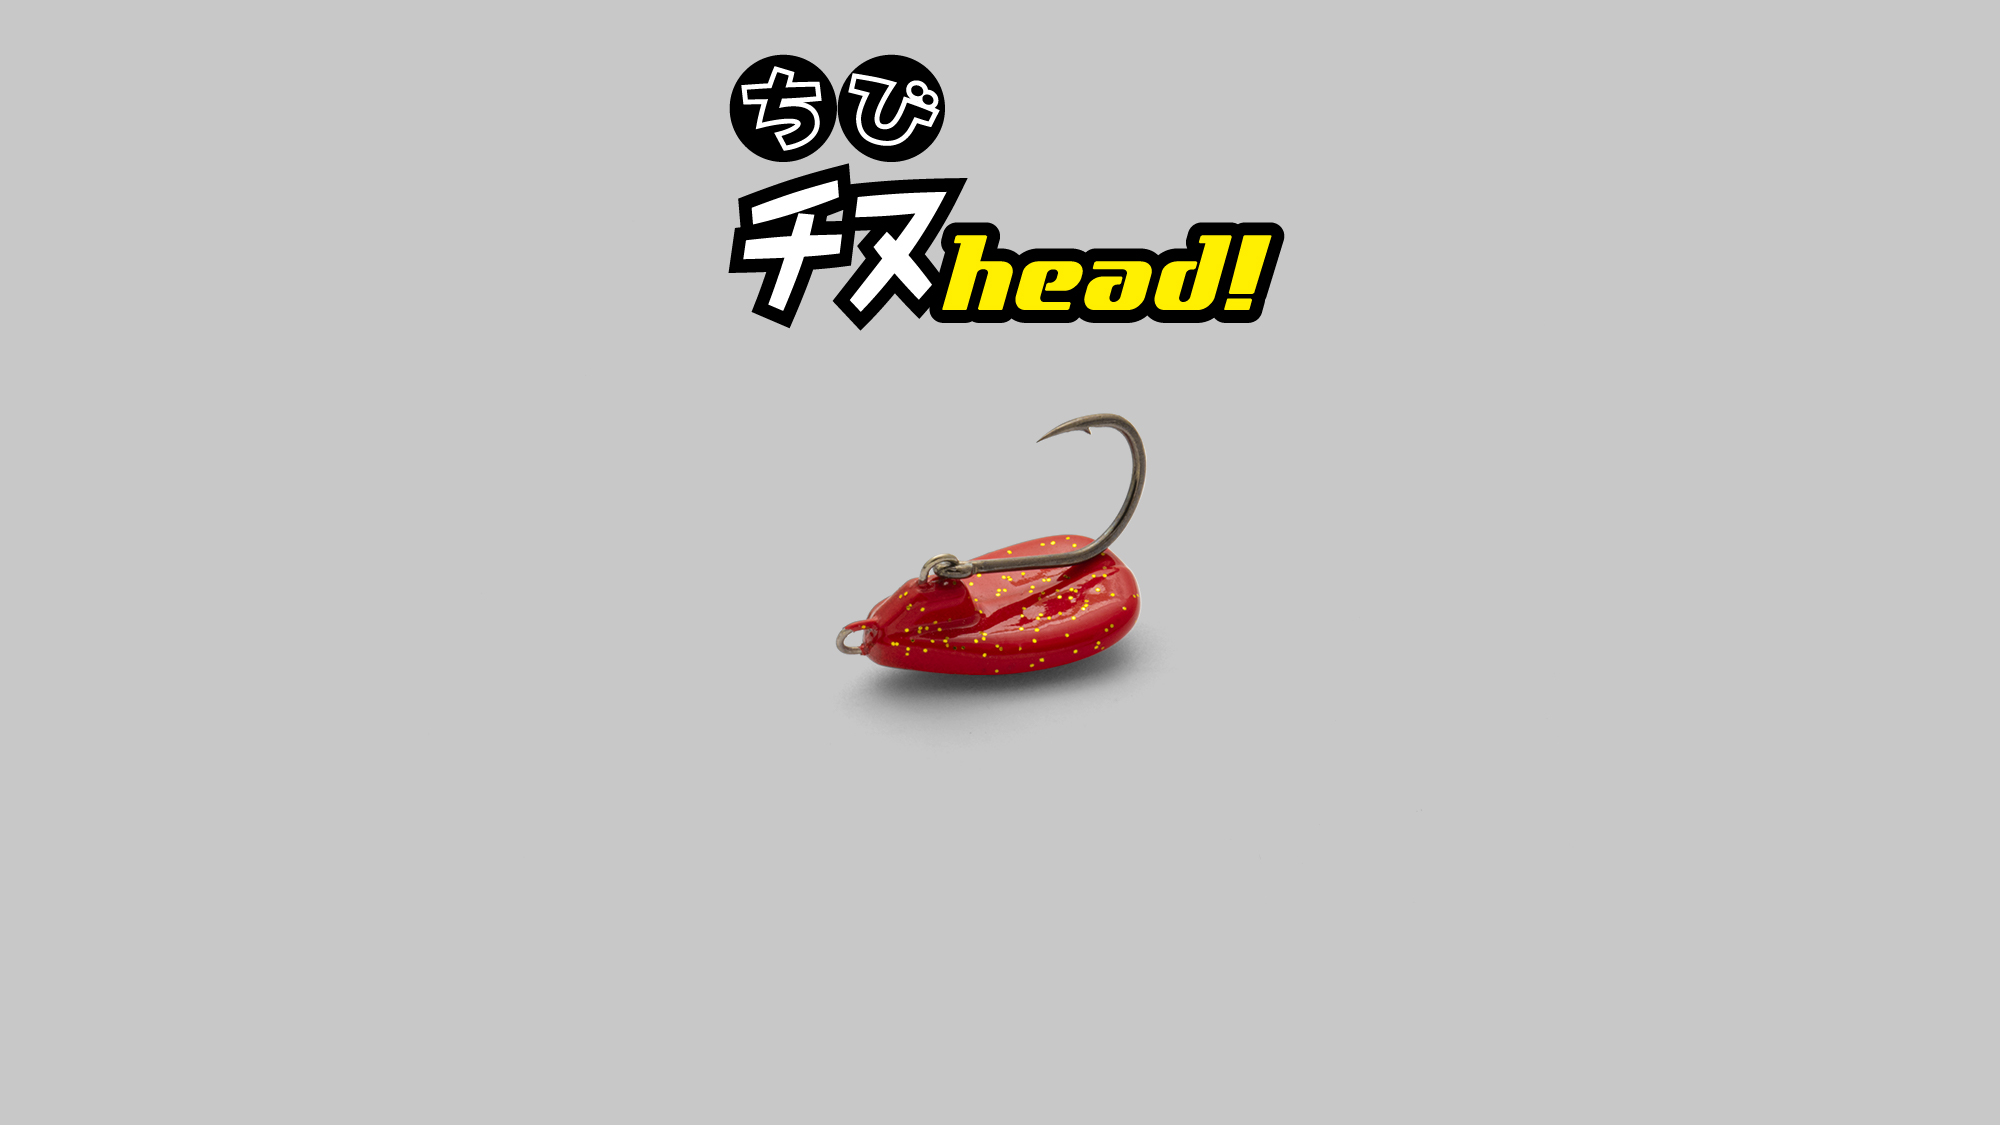  CHIBI CHINU HEAD / ちびチヌヘッド